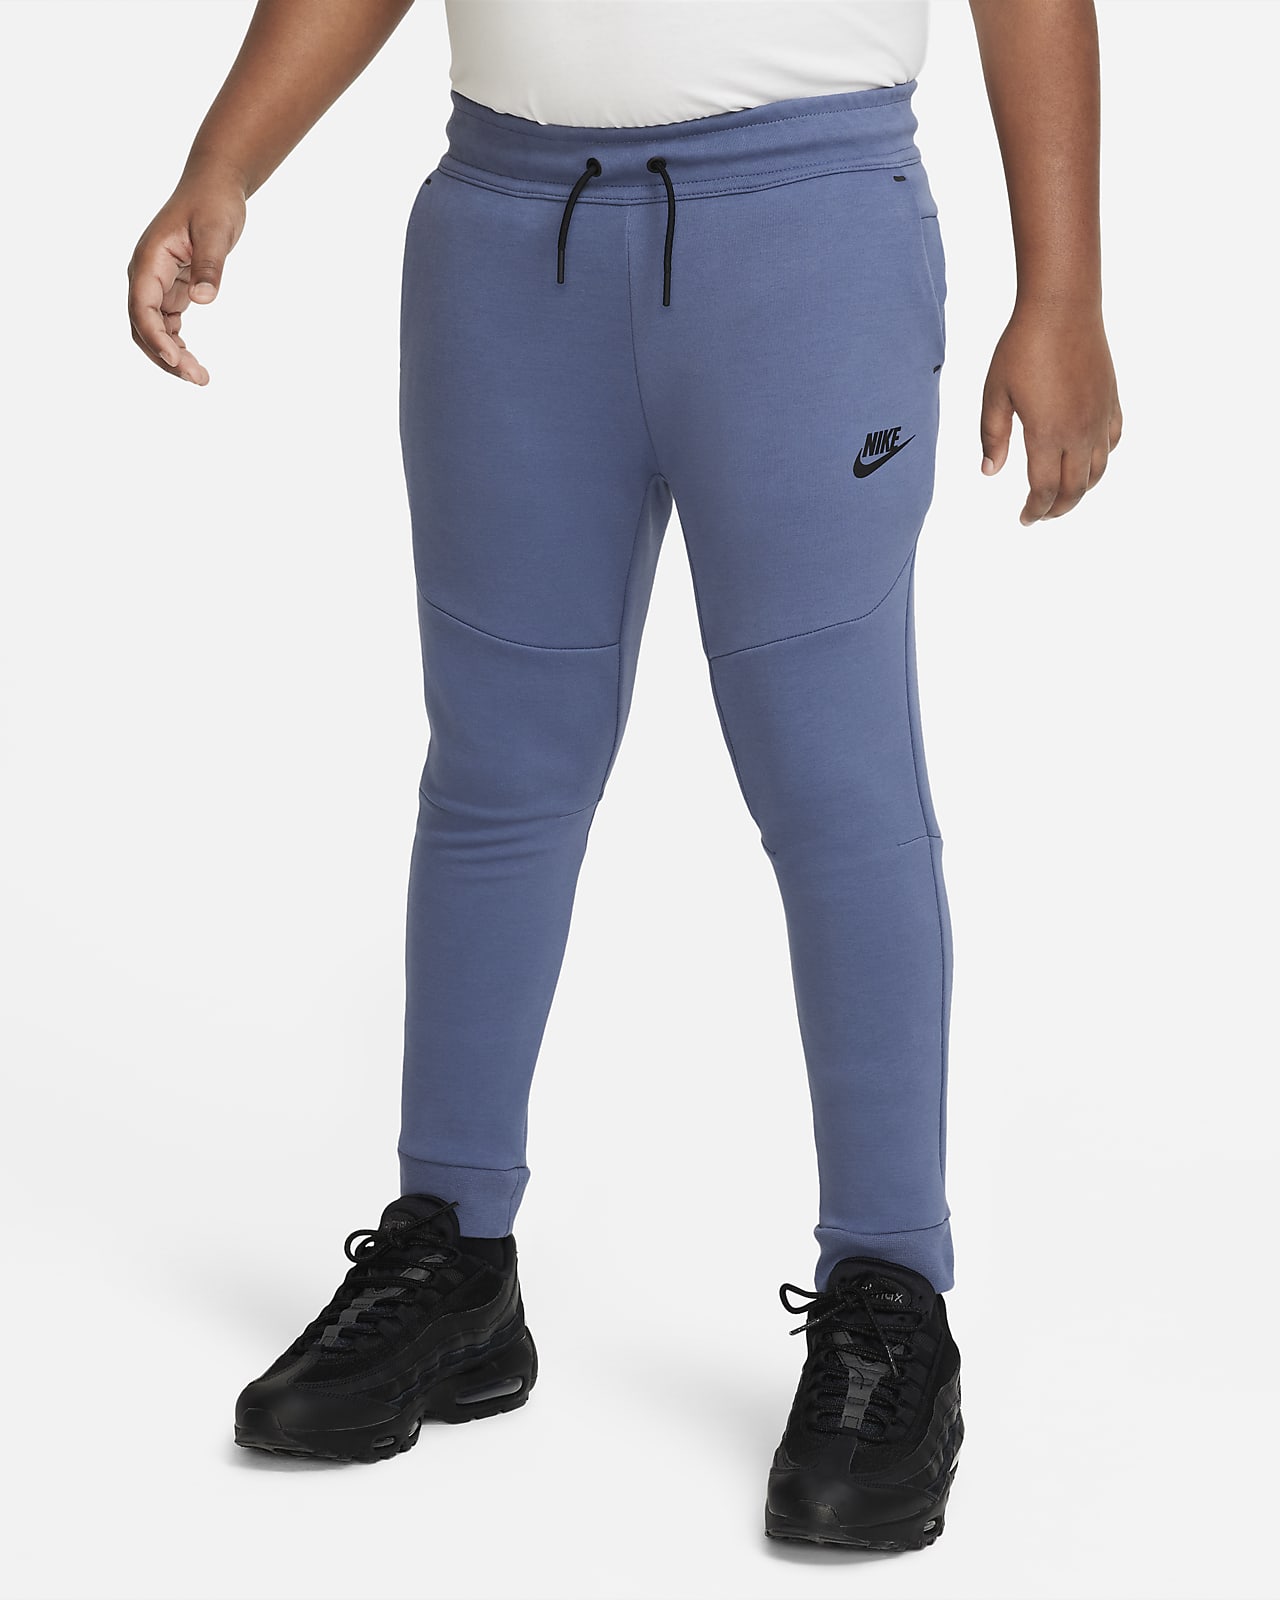 Nike Sportswear Tech Kids' (Boys') Pants (Extended Size). Nike